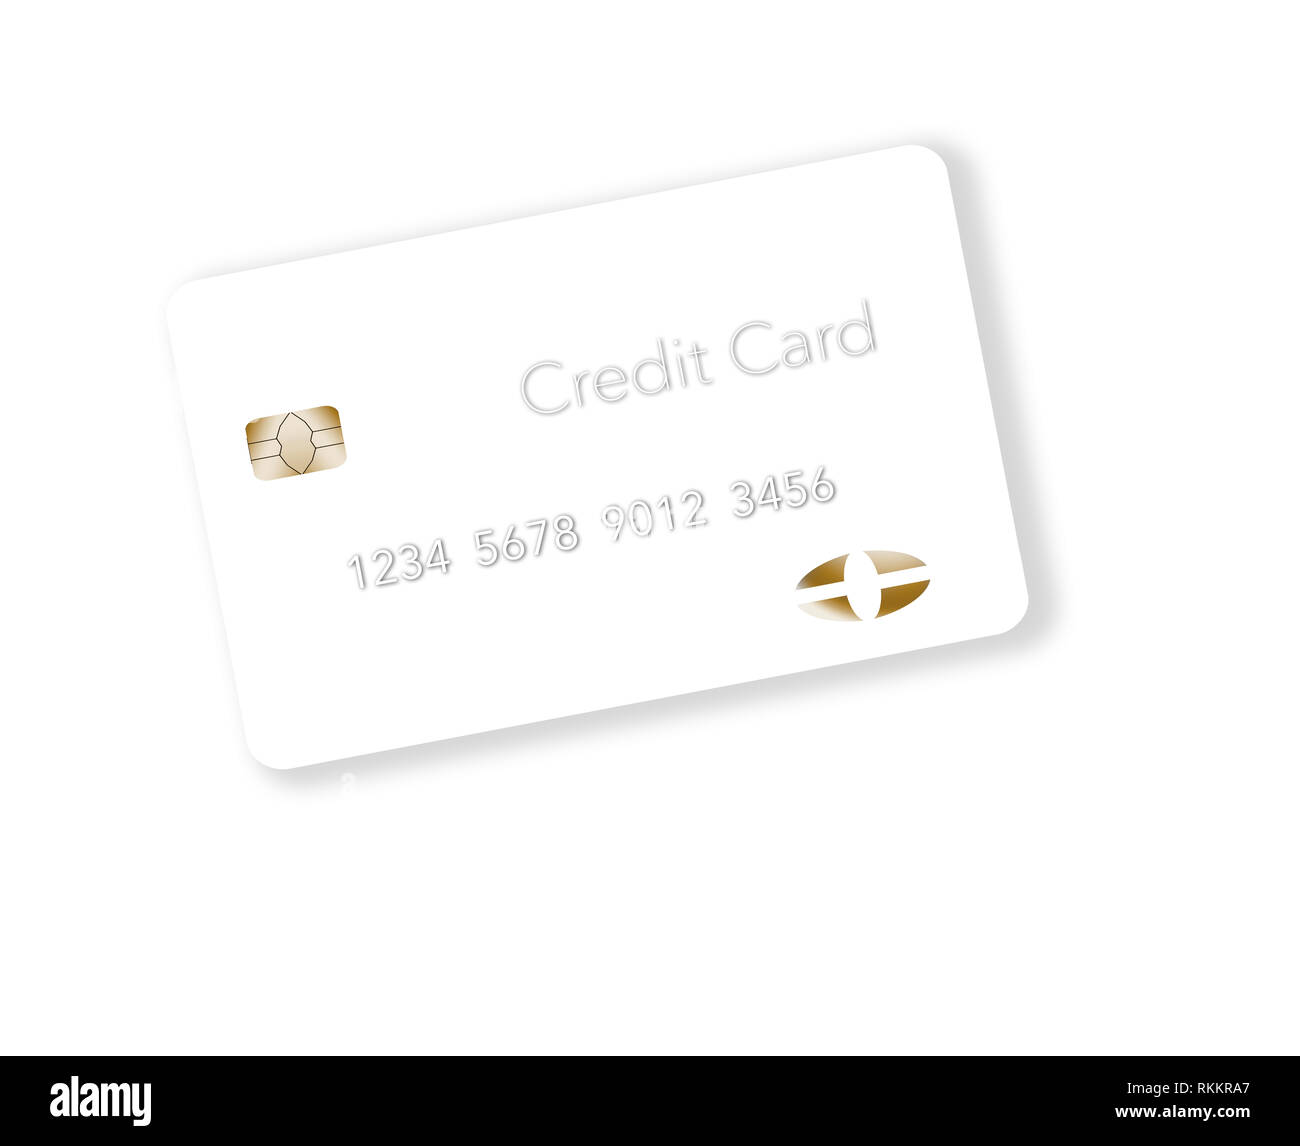 Für einen einzigartigen Blick, eine weiße Kreditkarte ist auf einem hellen Hintergrund gesehen. Dies ist eine Abbildung. Stockfoto